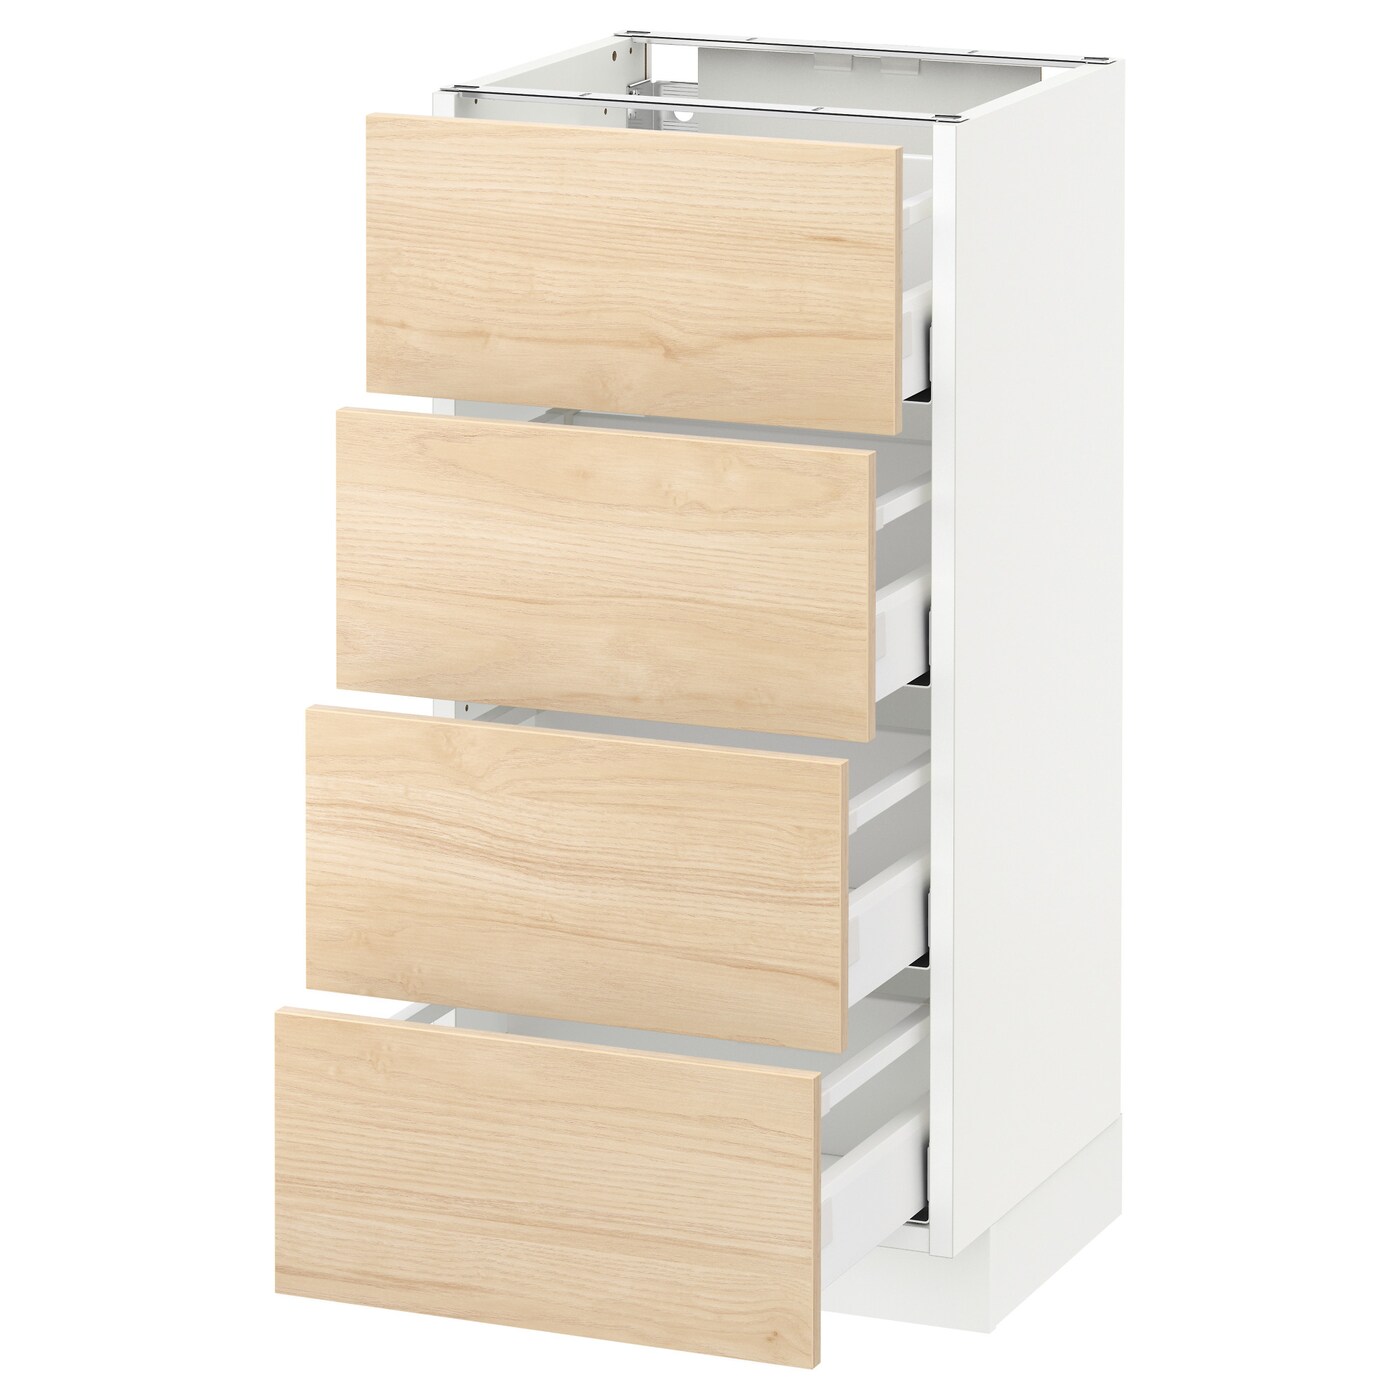 Напольный кухонный шкаф  - IKEA METOD MAXIMERA, 88x39,2x40см, белый/светло-коричневый, МЕТОД МАКСИМЕРА ИКЕА